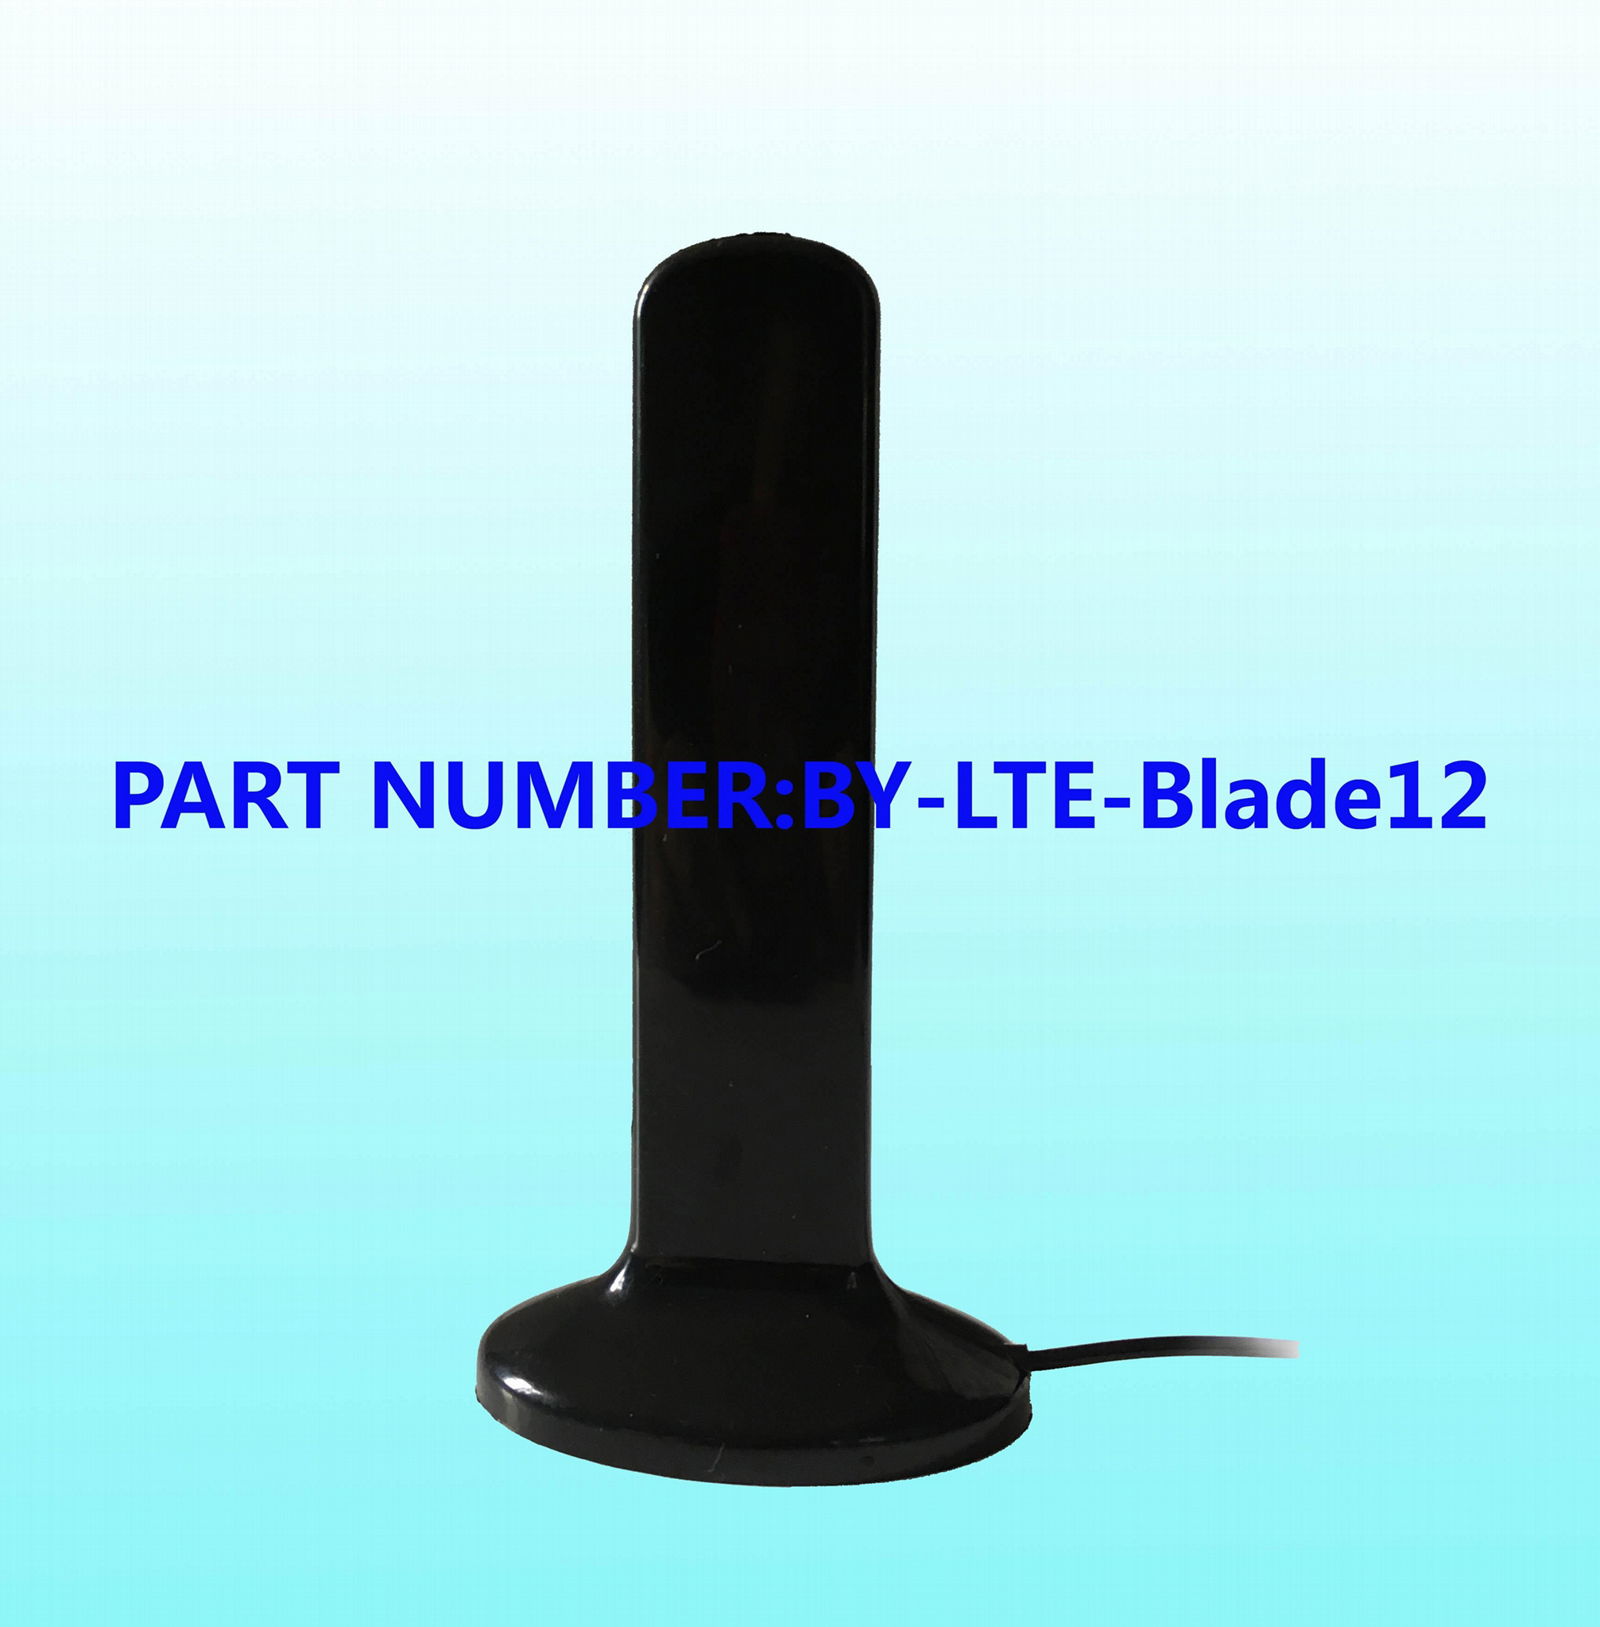 LTE/4G Blade antenna